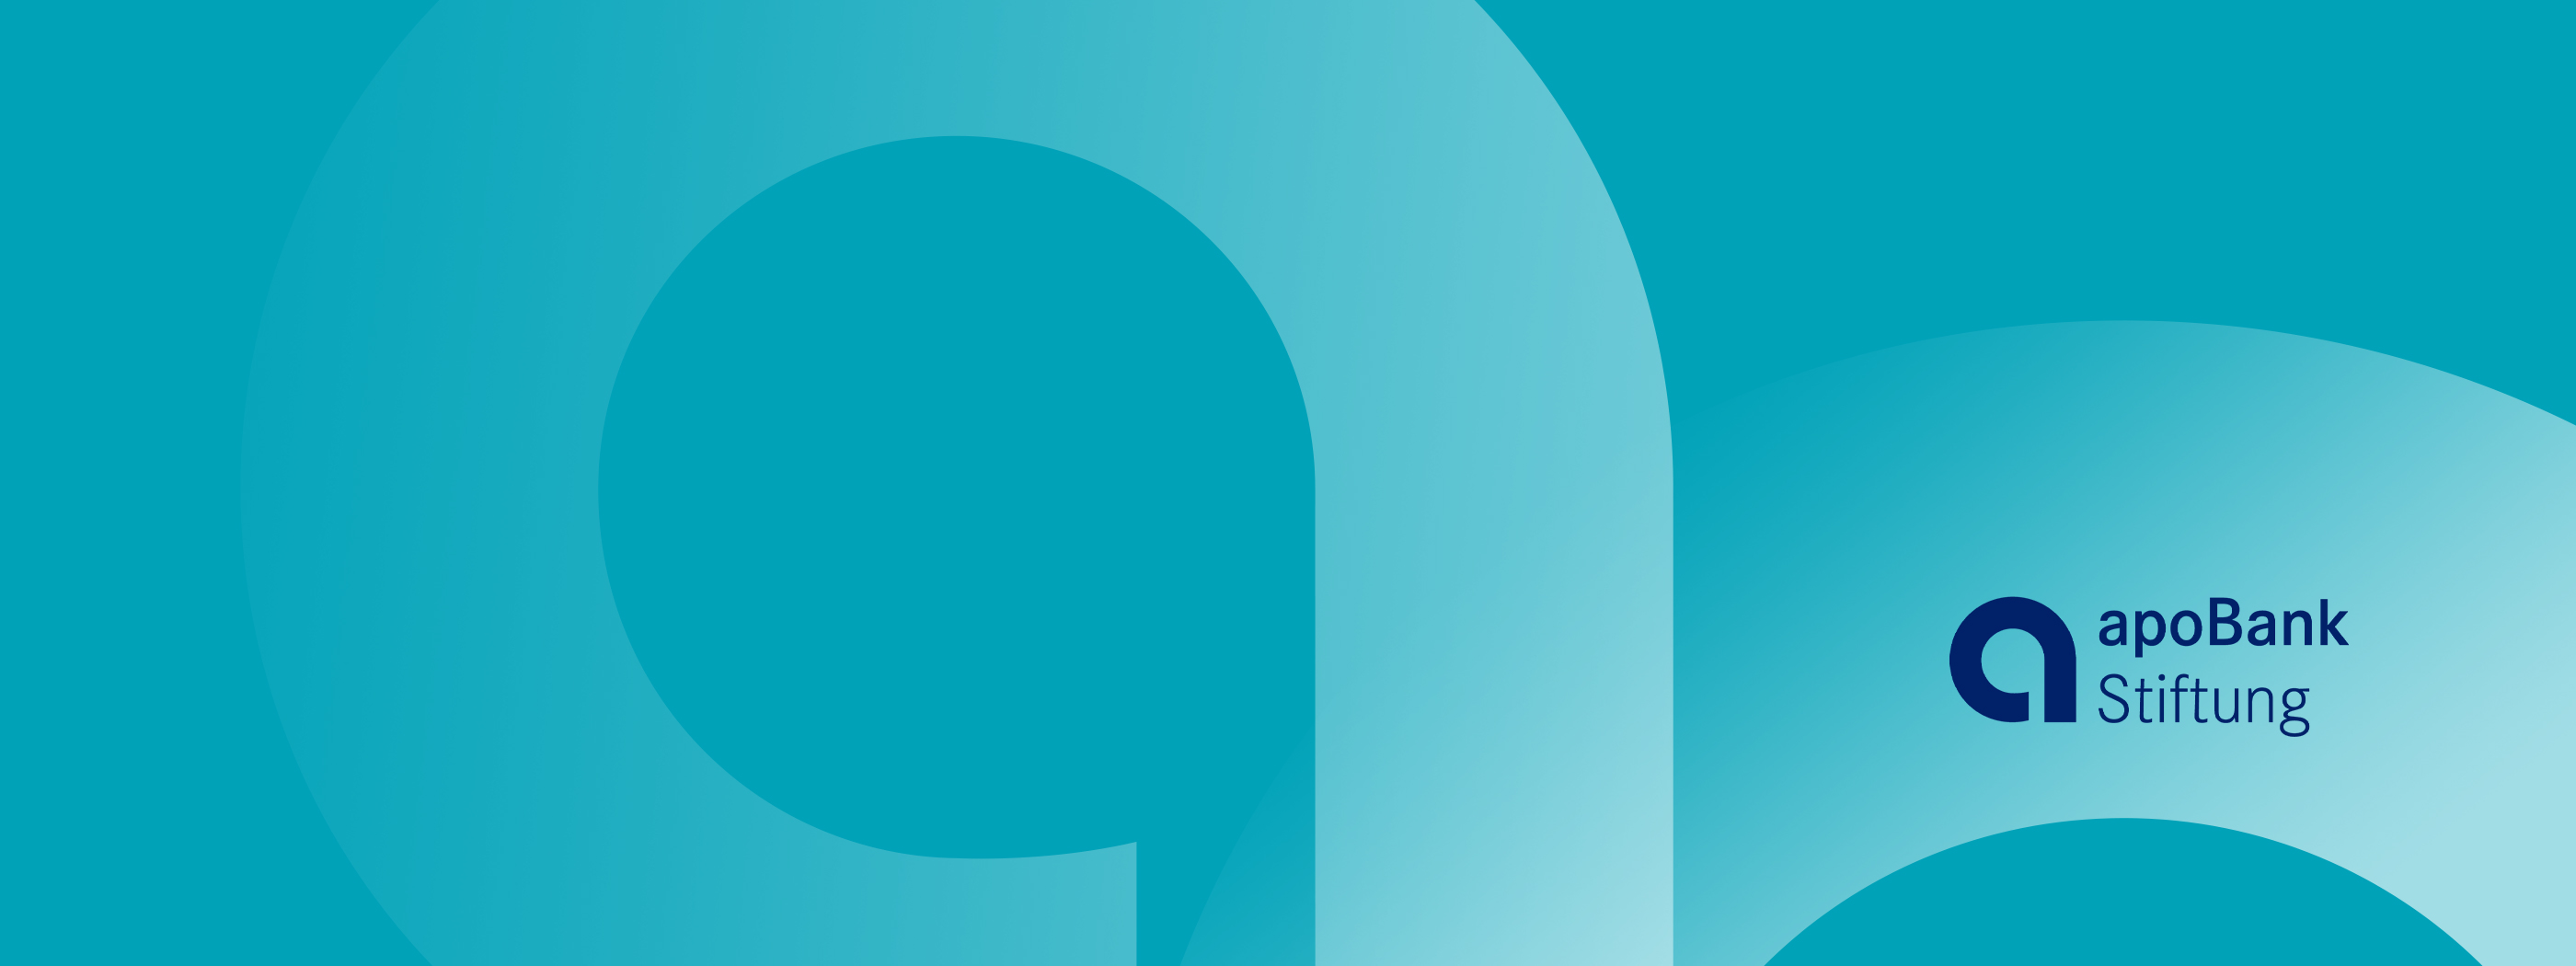 Headerbild: Logo der apoBank-Stiftung